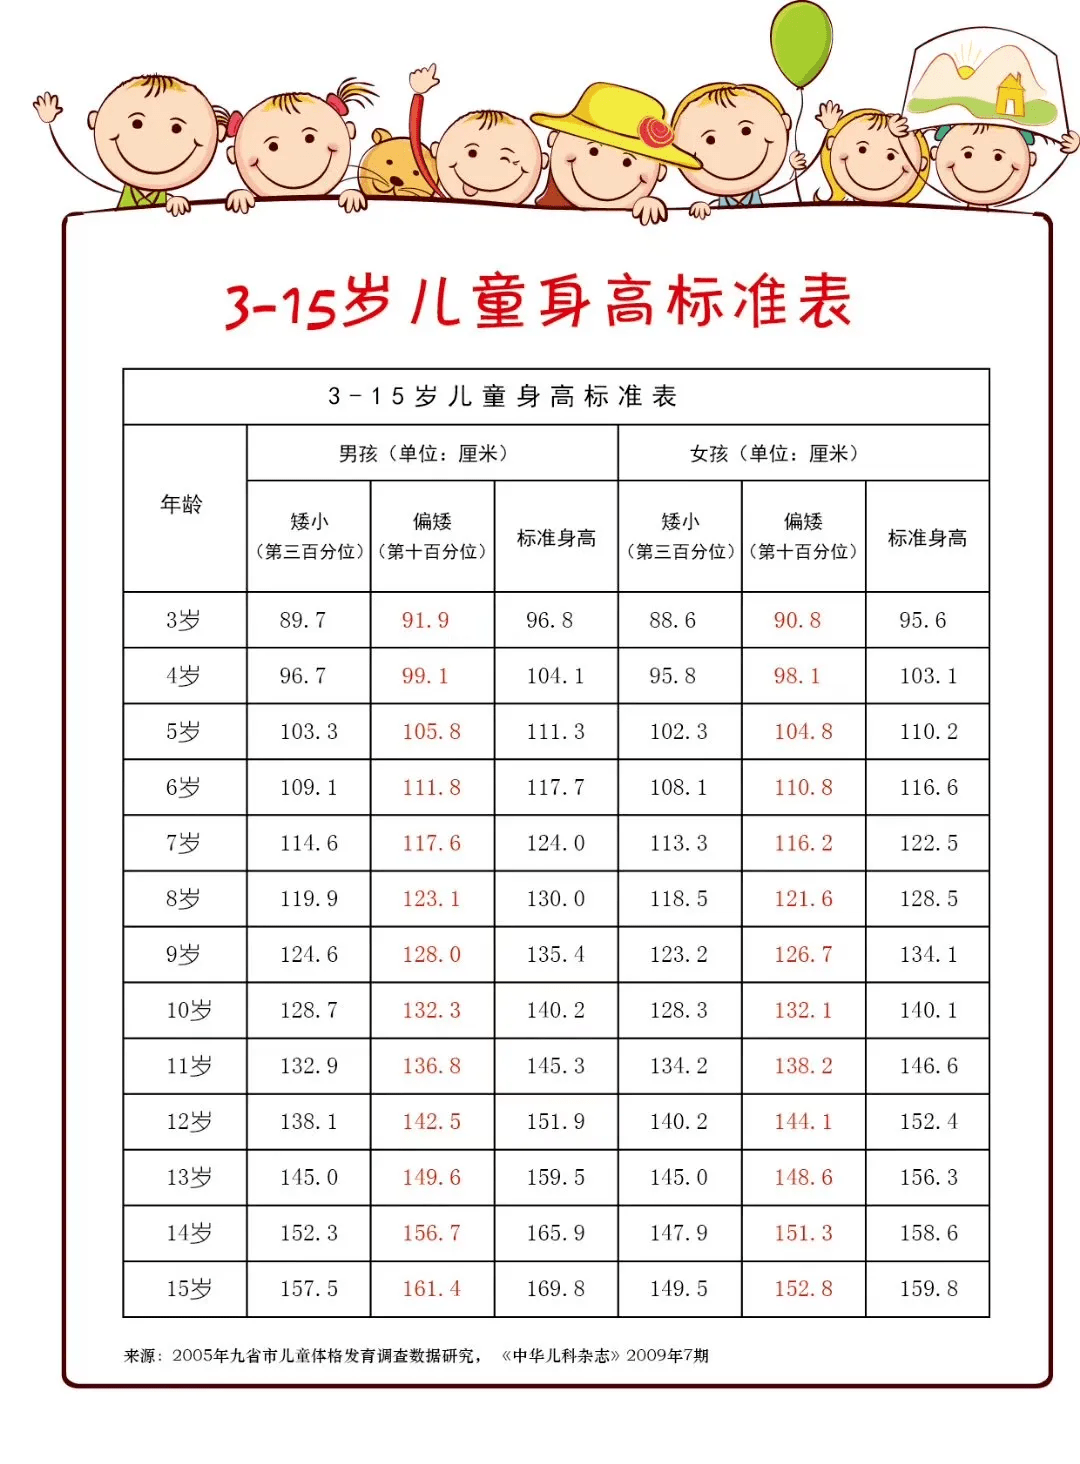 根据首都儿科研究所发布的中国儿童身高标准表,各位家长可以来看一看